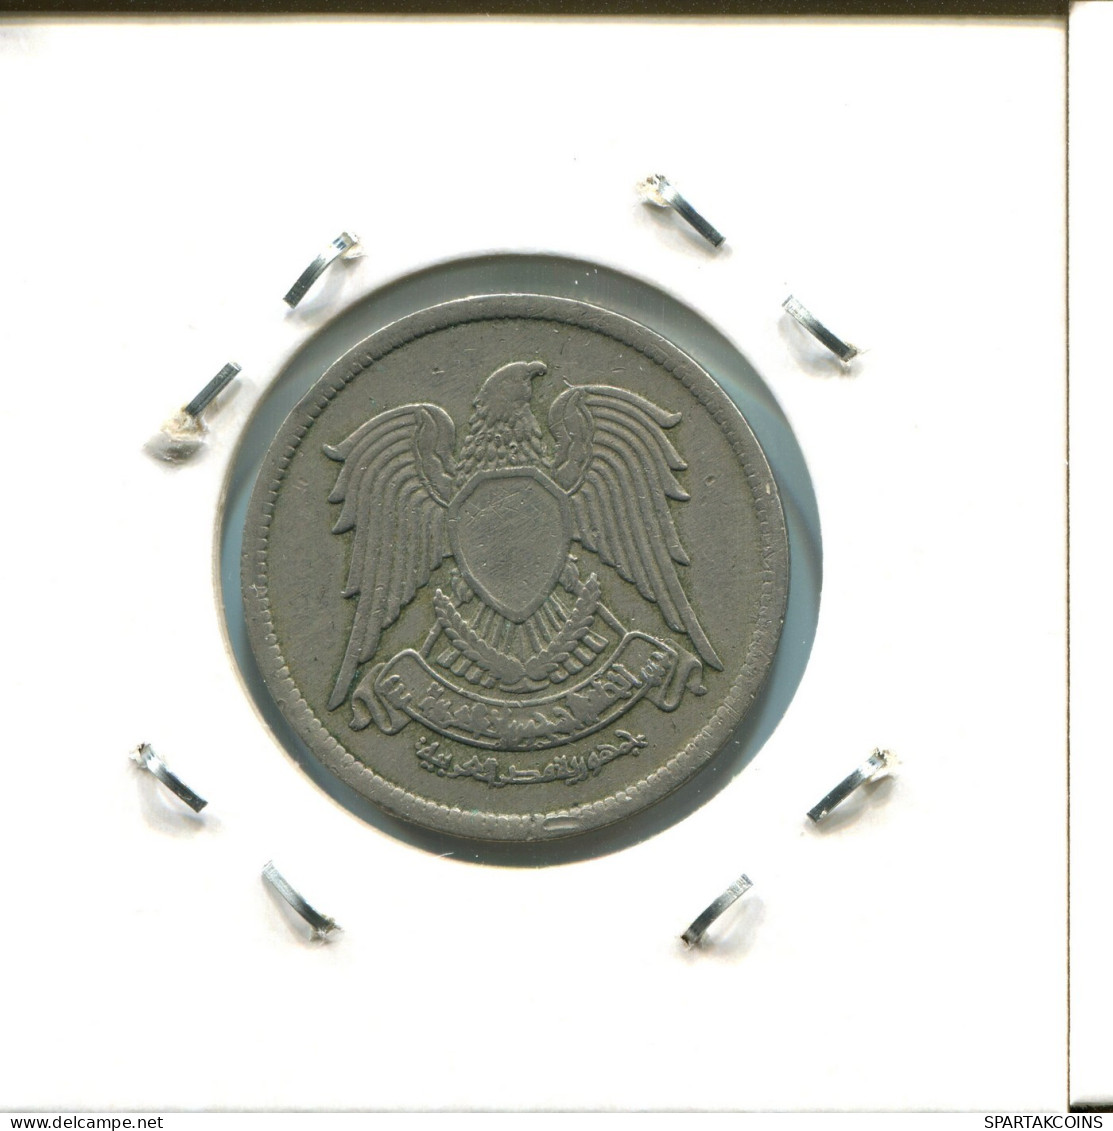 5 QIRSH 1972 ÄGYPTEN EGYPT Islamisch Münze #AW726.D.A - Egypte